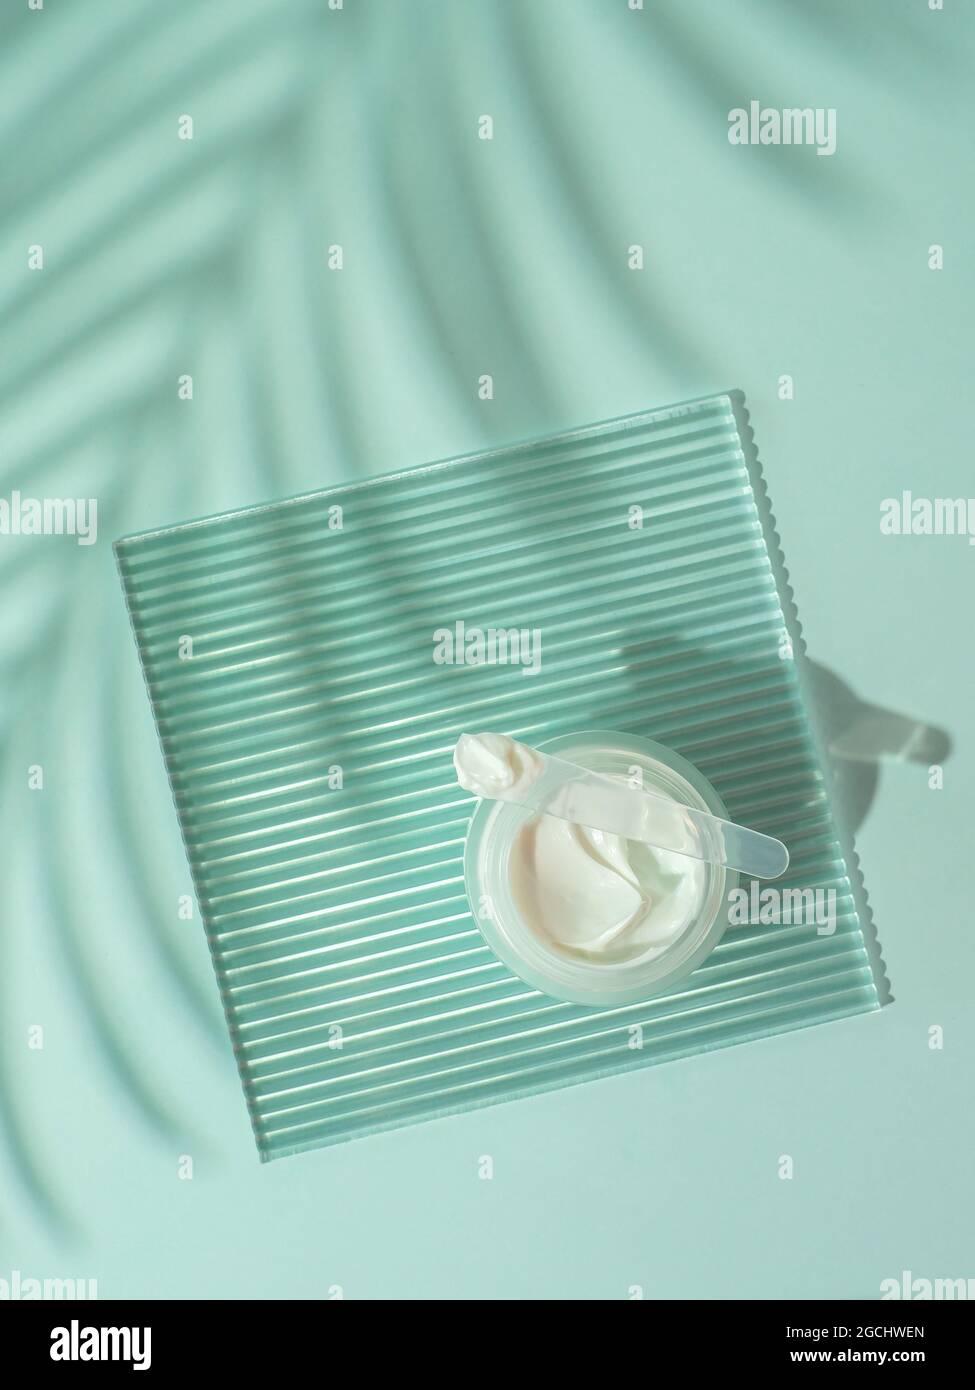 Moustirizer crème cosmétique, plaque acrylique striée transparente